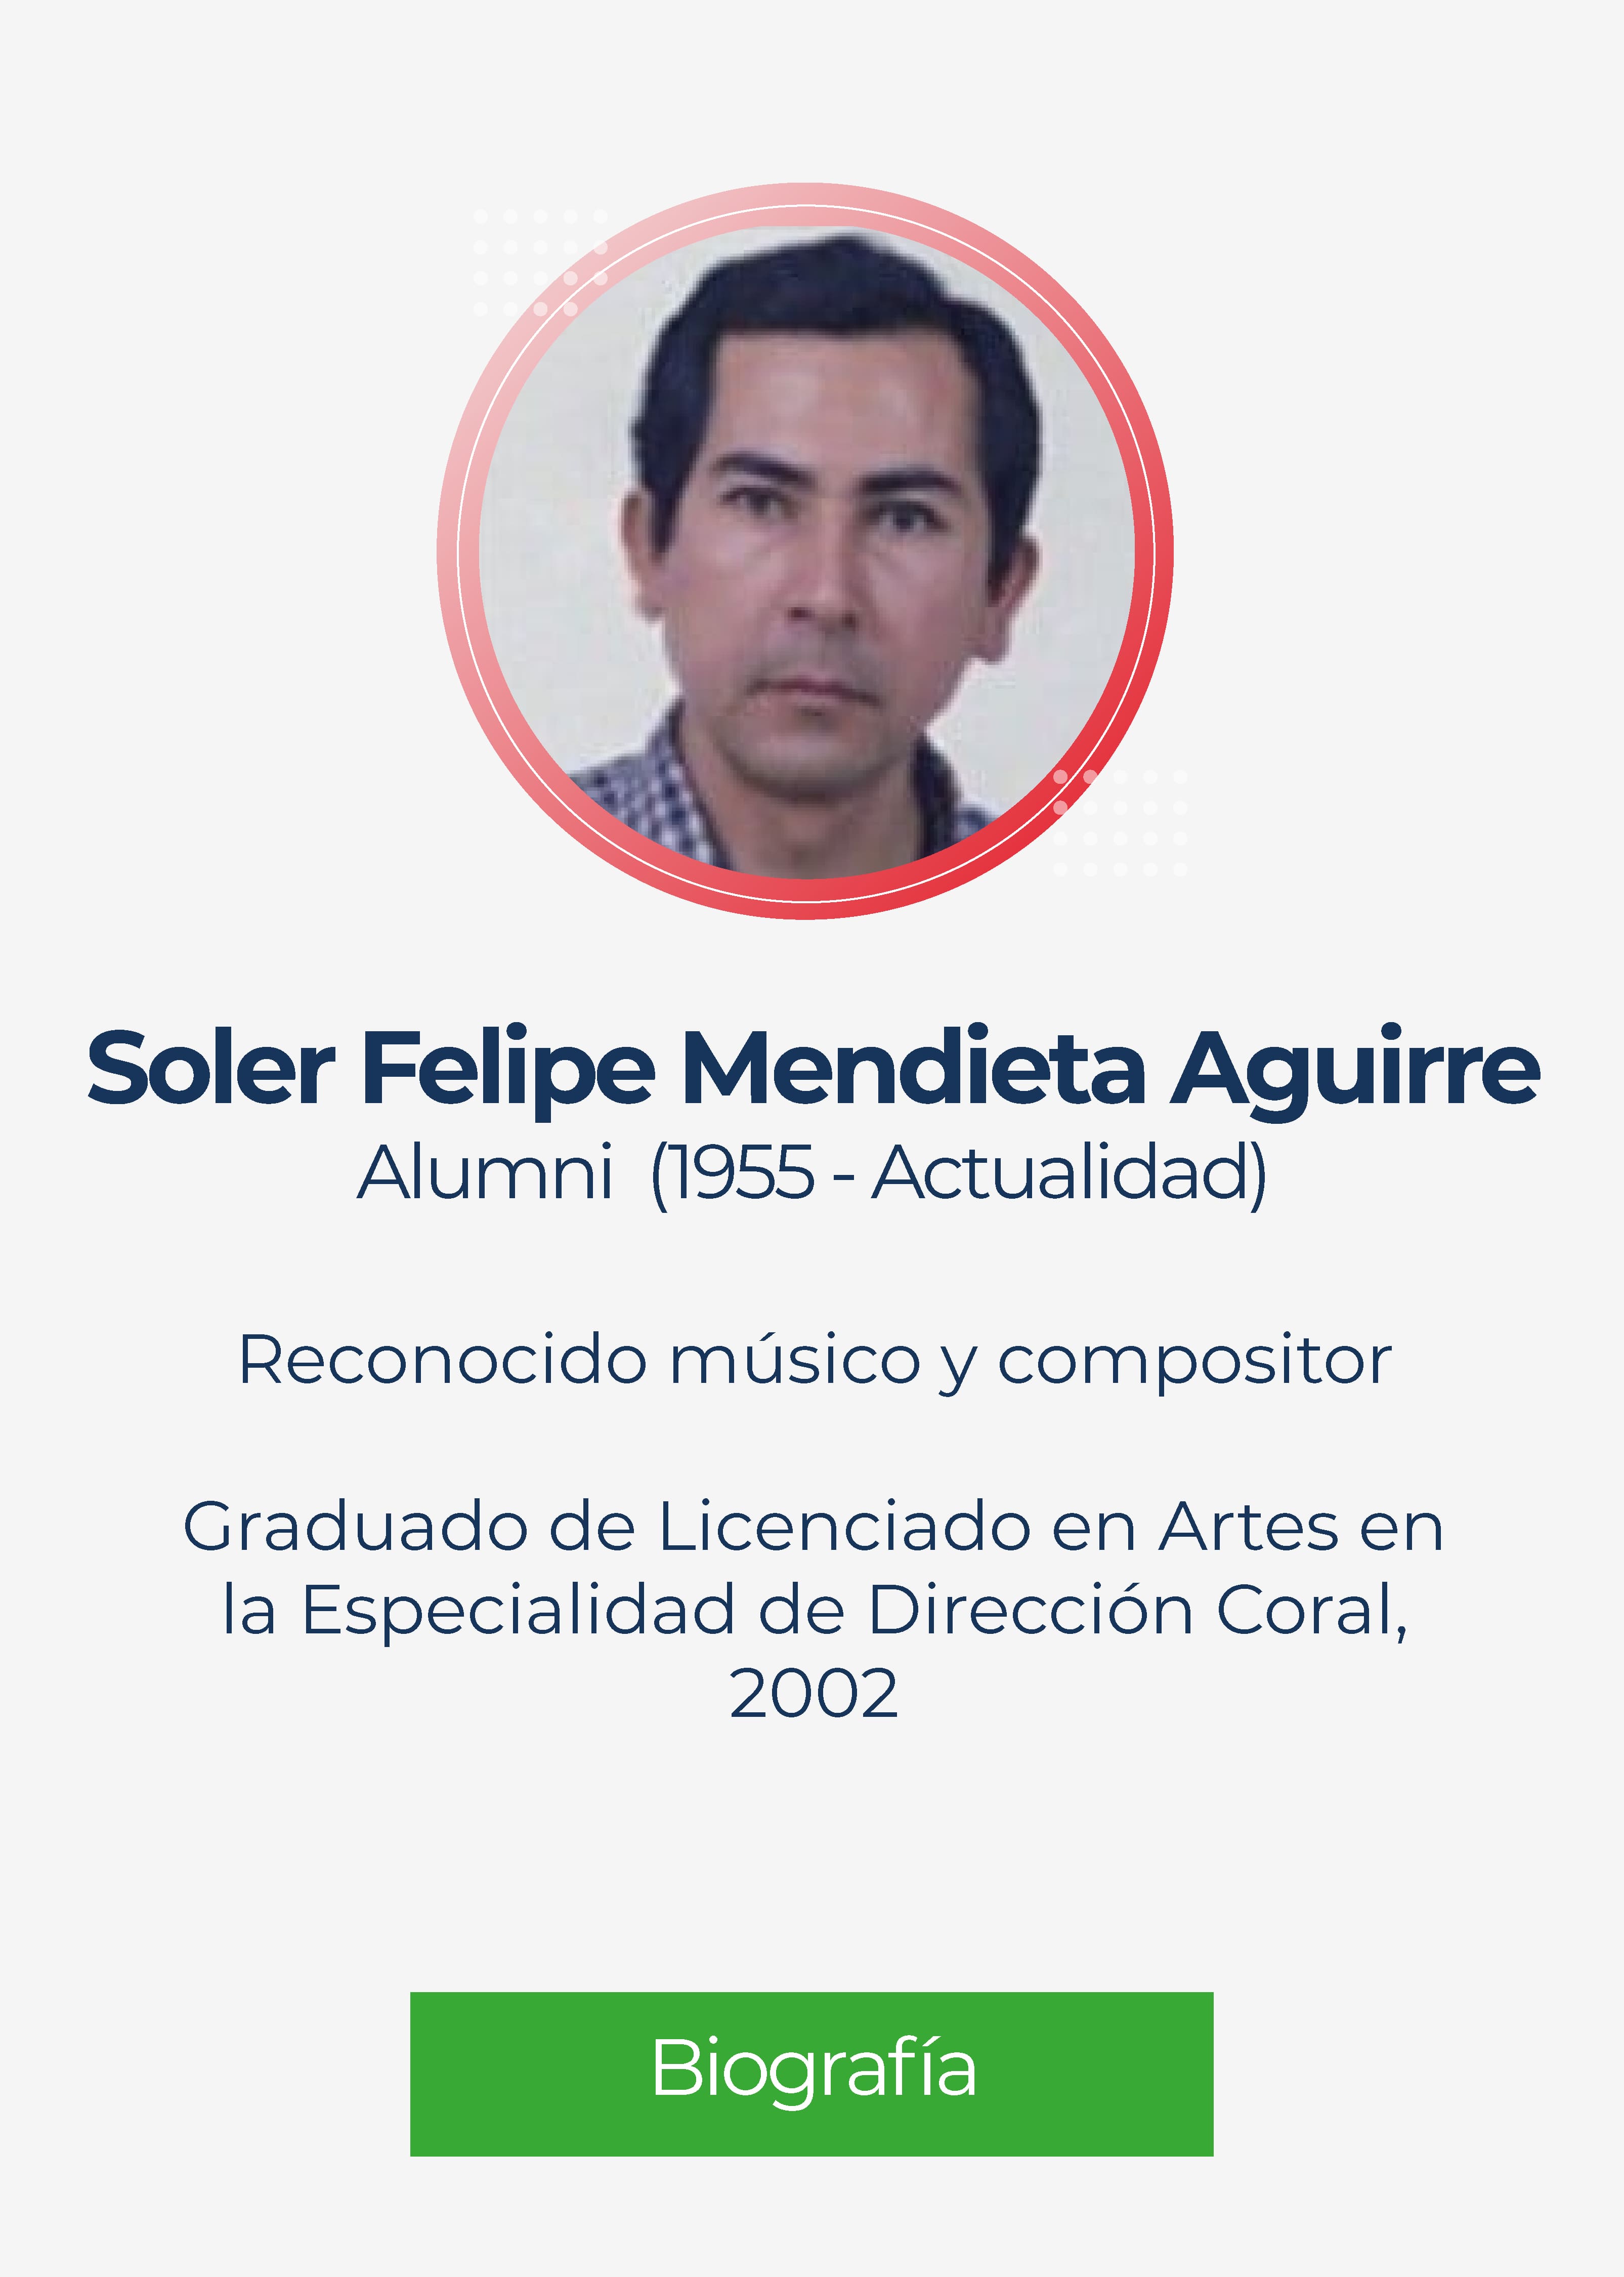 Soler Felipe Mendieta Aguirre